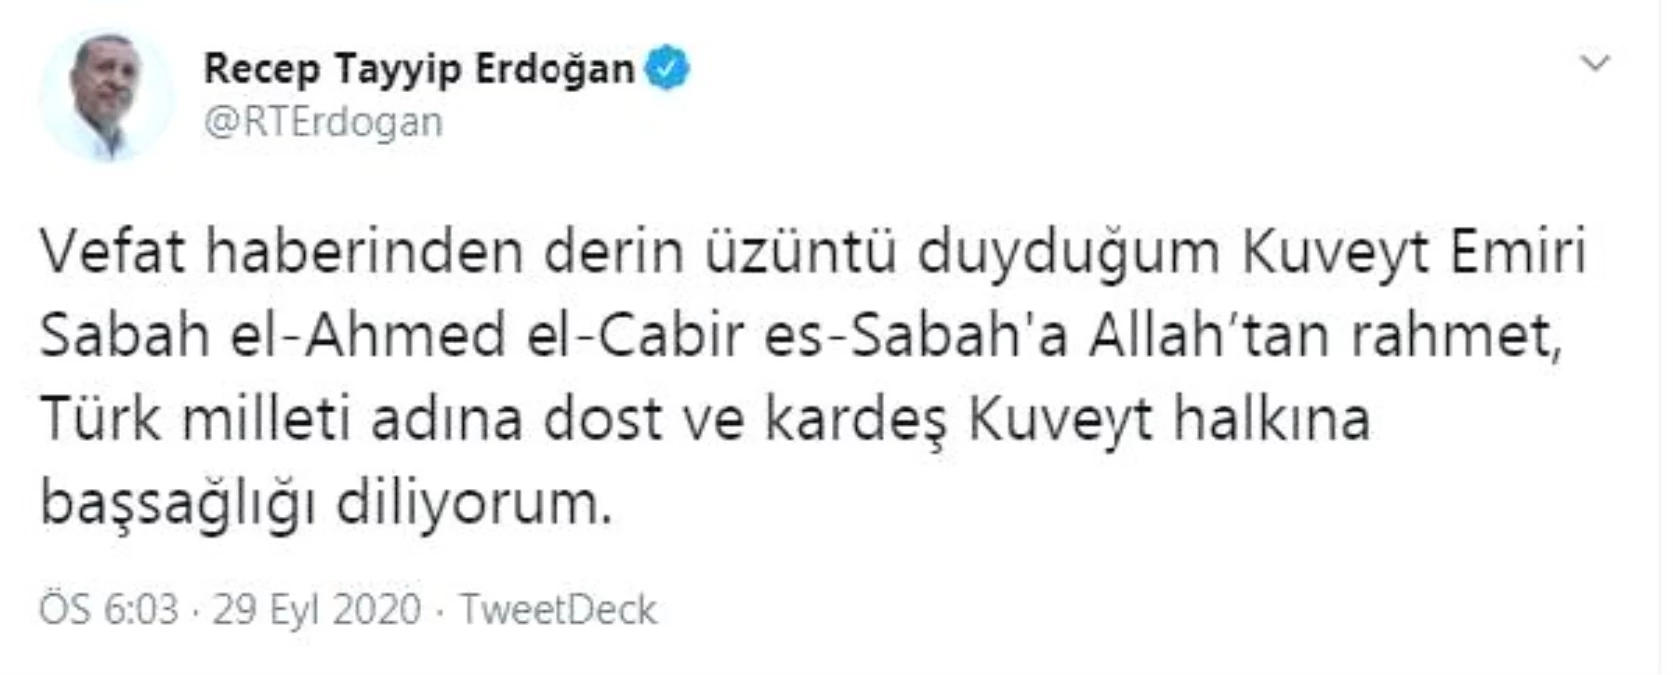 Son dakika haberi... Erdoğan\'dan Kuveyt Emiri Sabah el-Ahmed el-Cabir es-Sabah için taziye mesajı